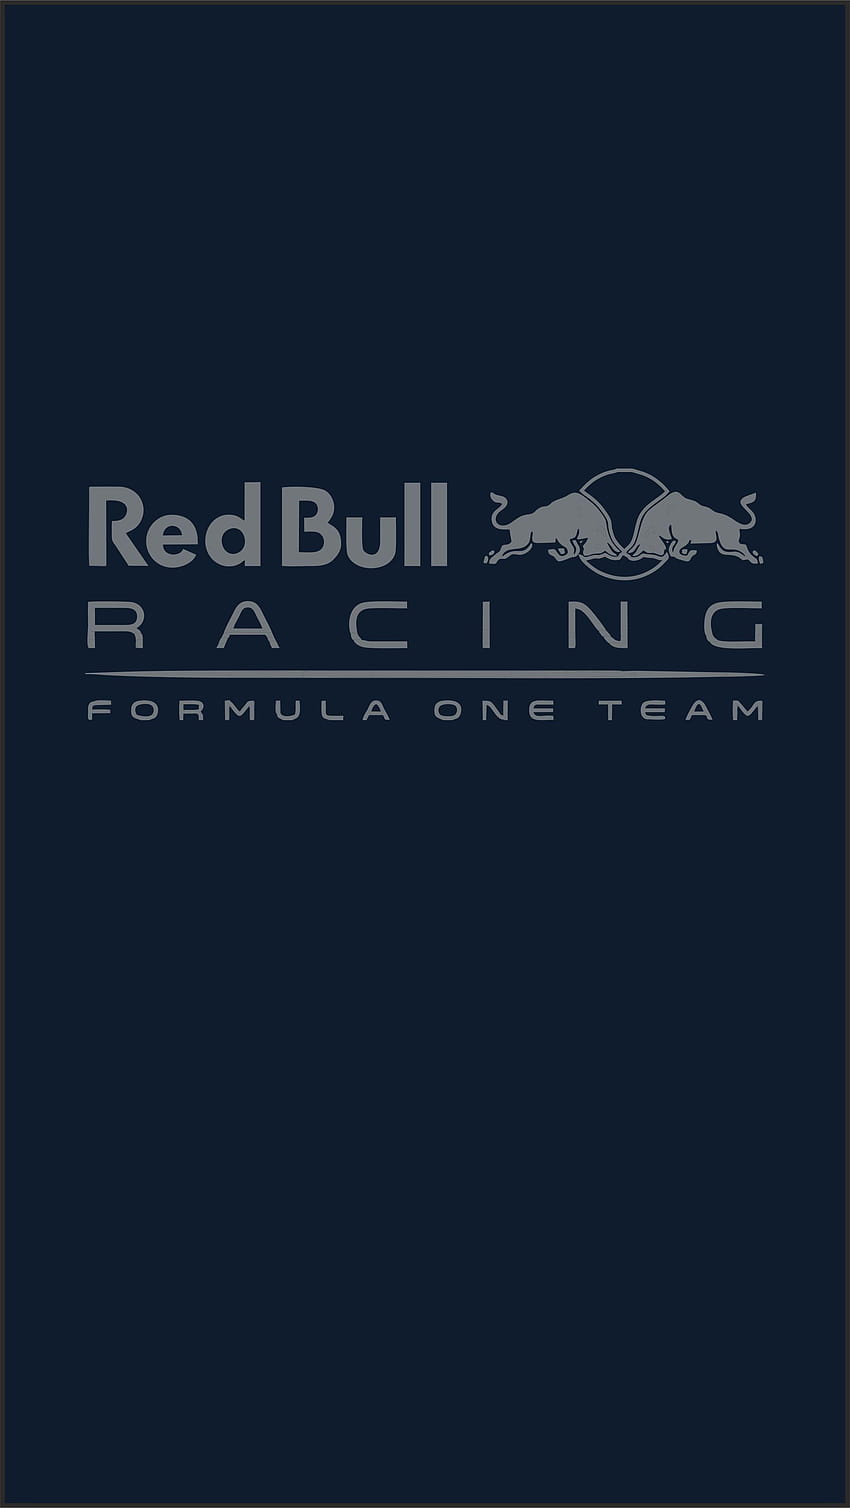 Red Bull Racing Iphone wallpaper ponsel HD